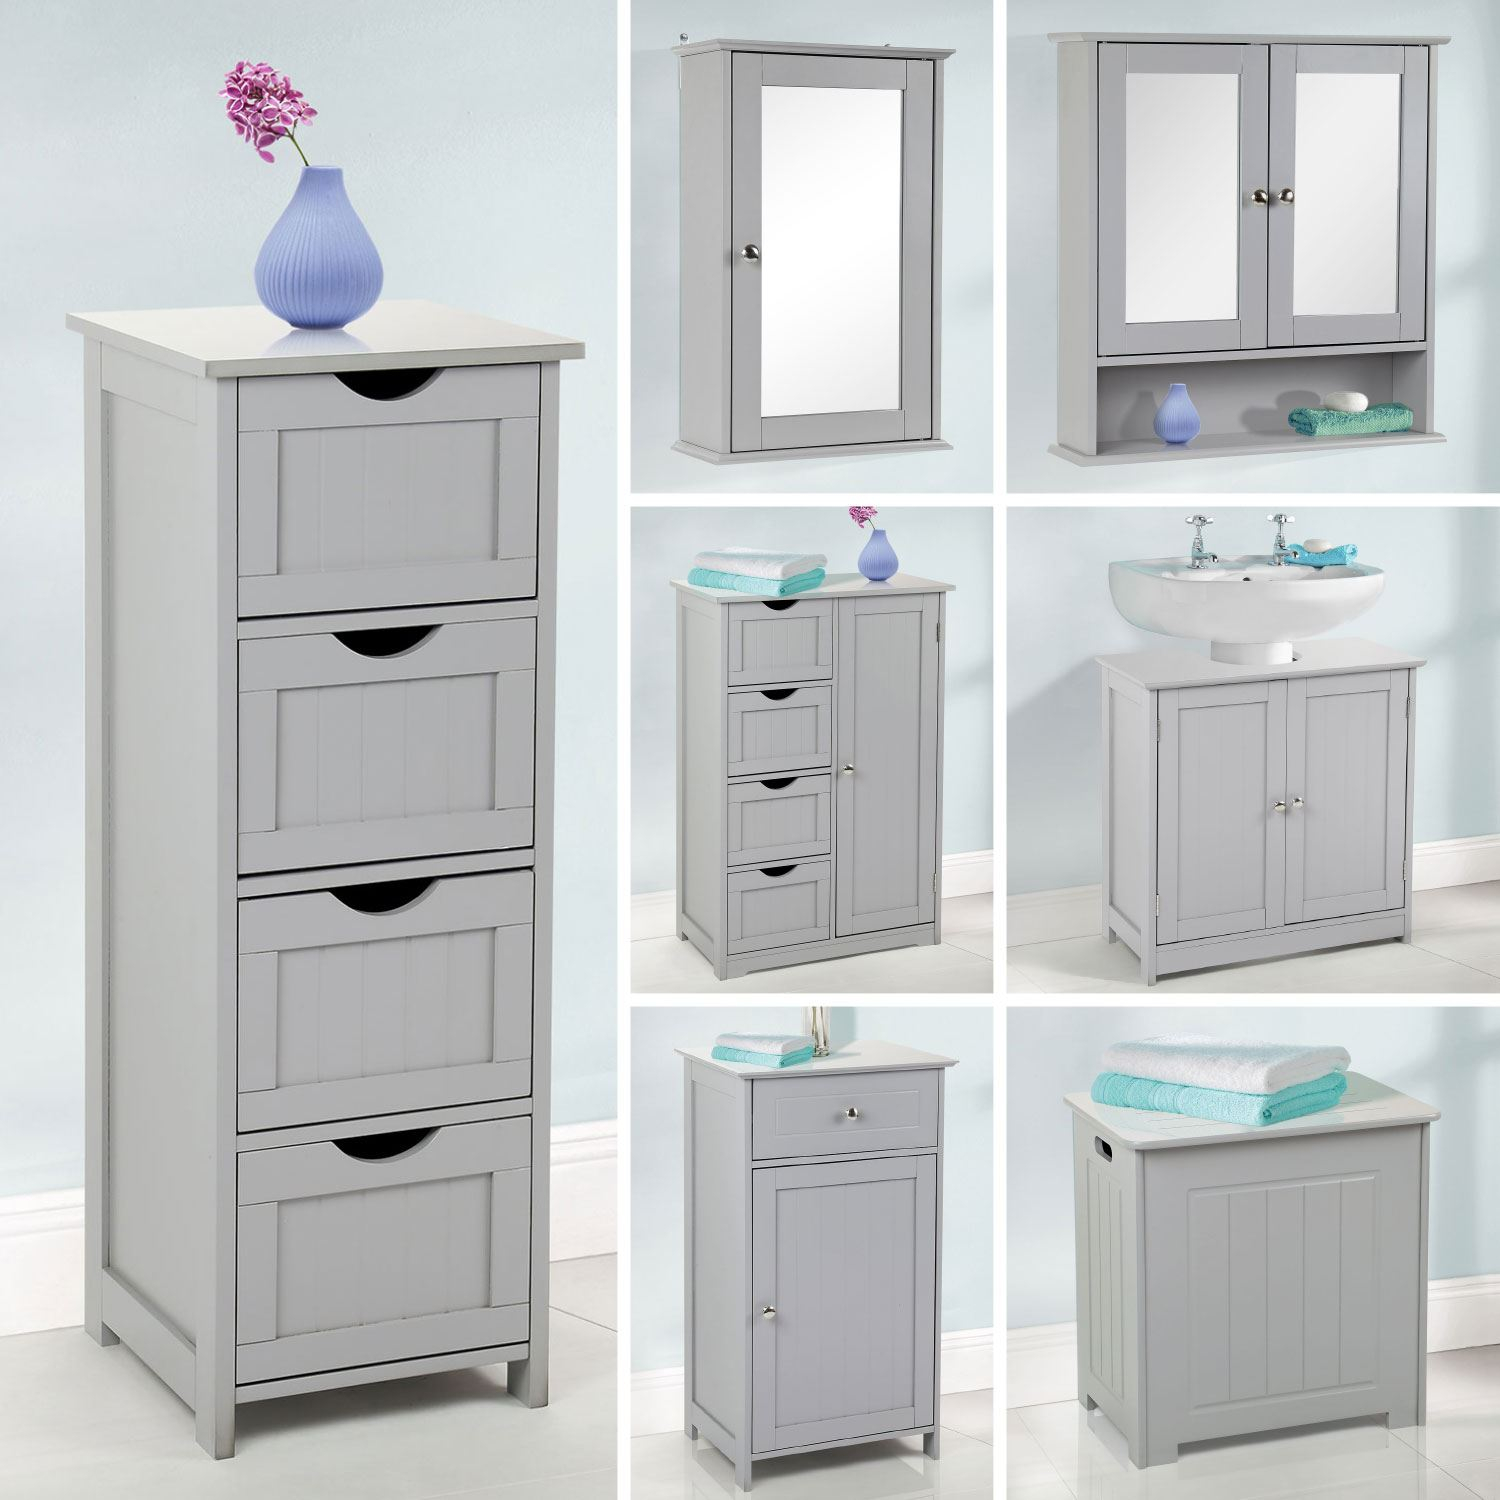 Details About Grey Wooden Bathroom Furniture Range Storage Cabinet Cupboard Under Sink Mirror with size 1500 X 1500